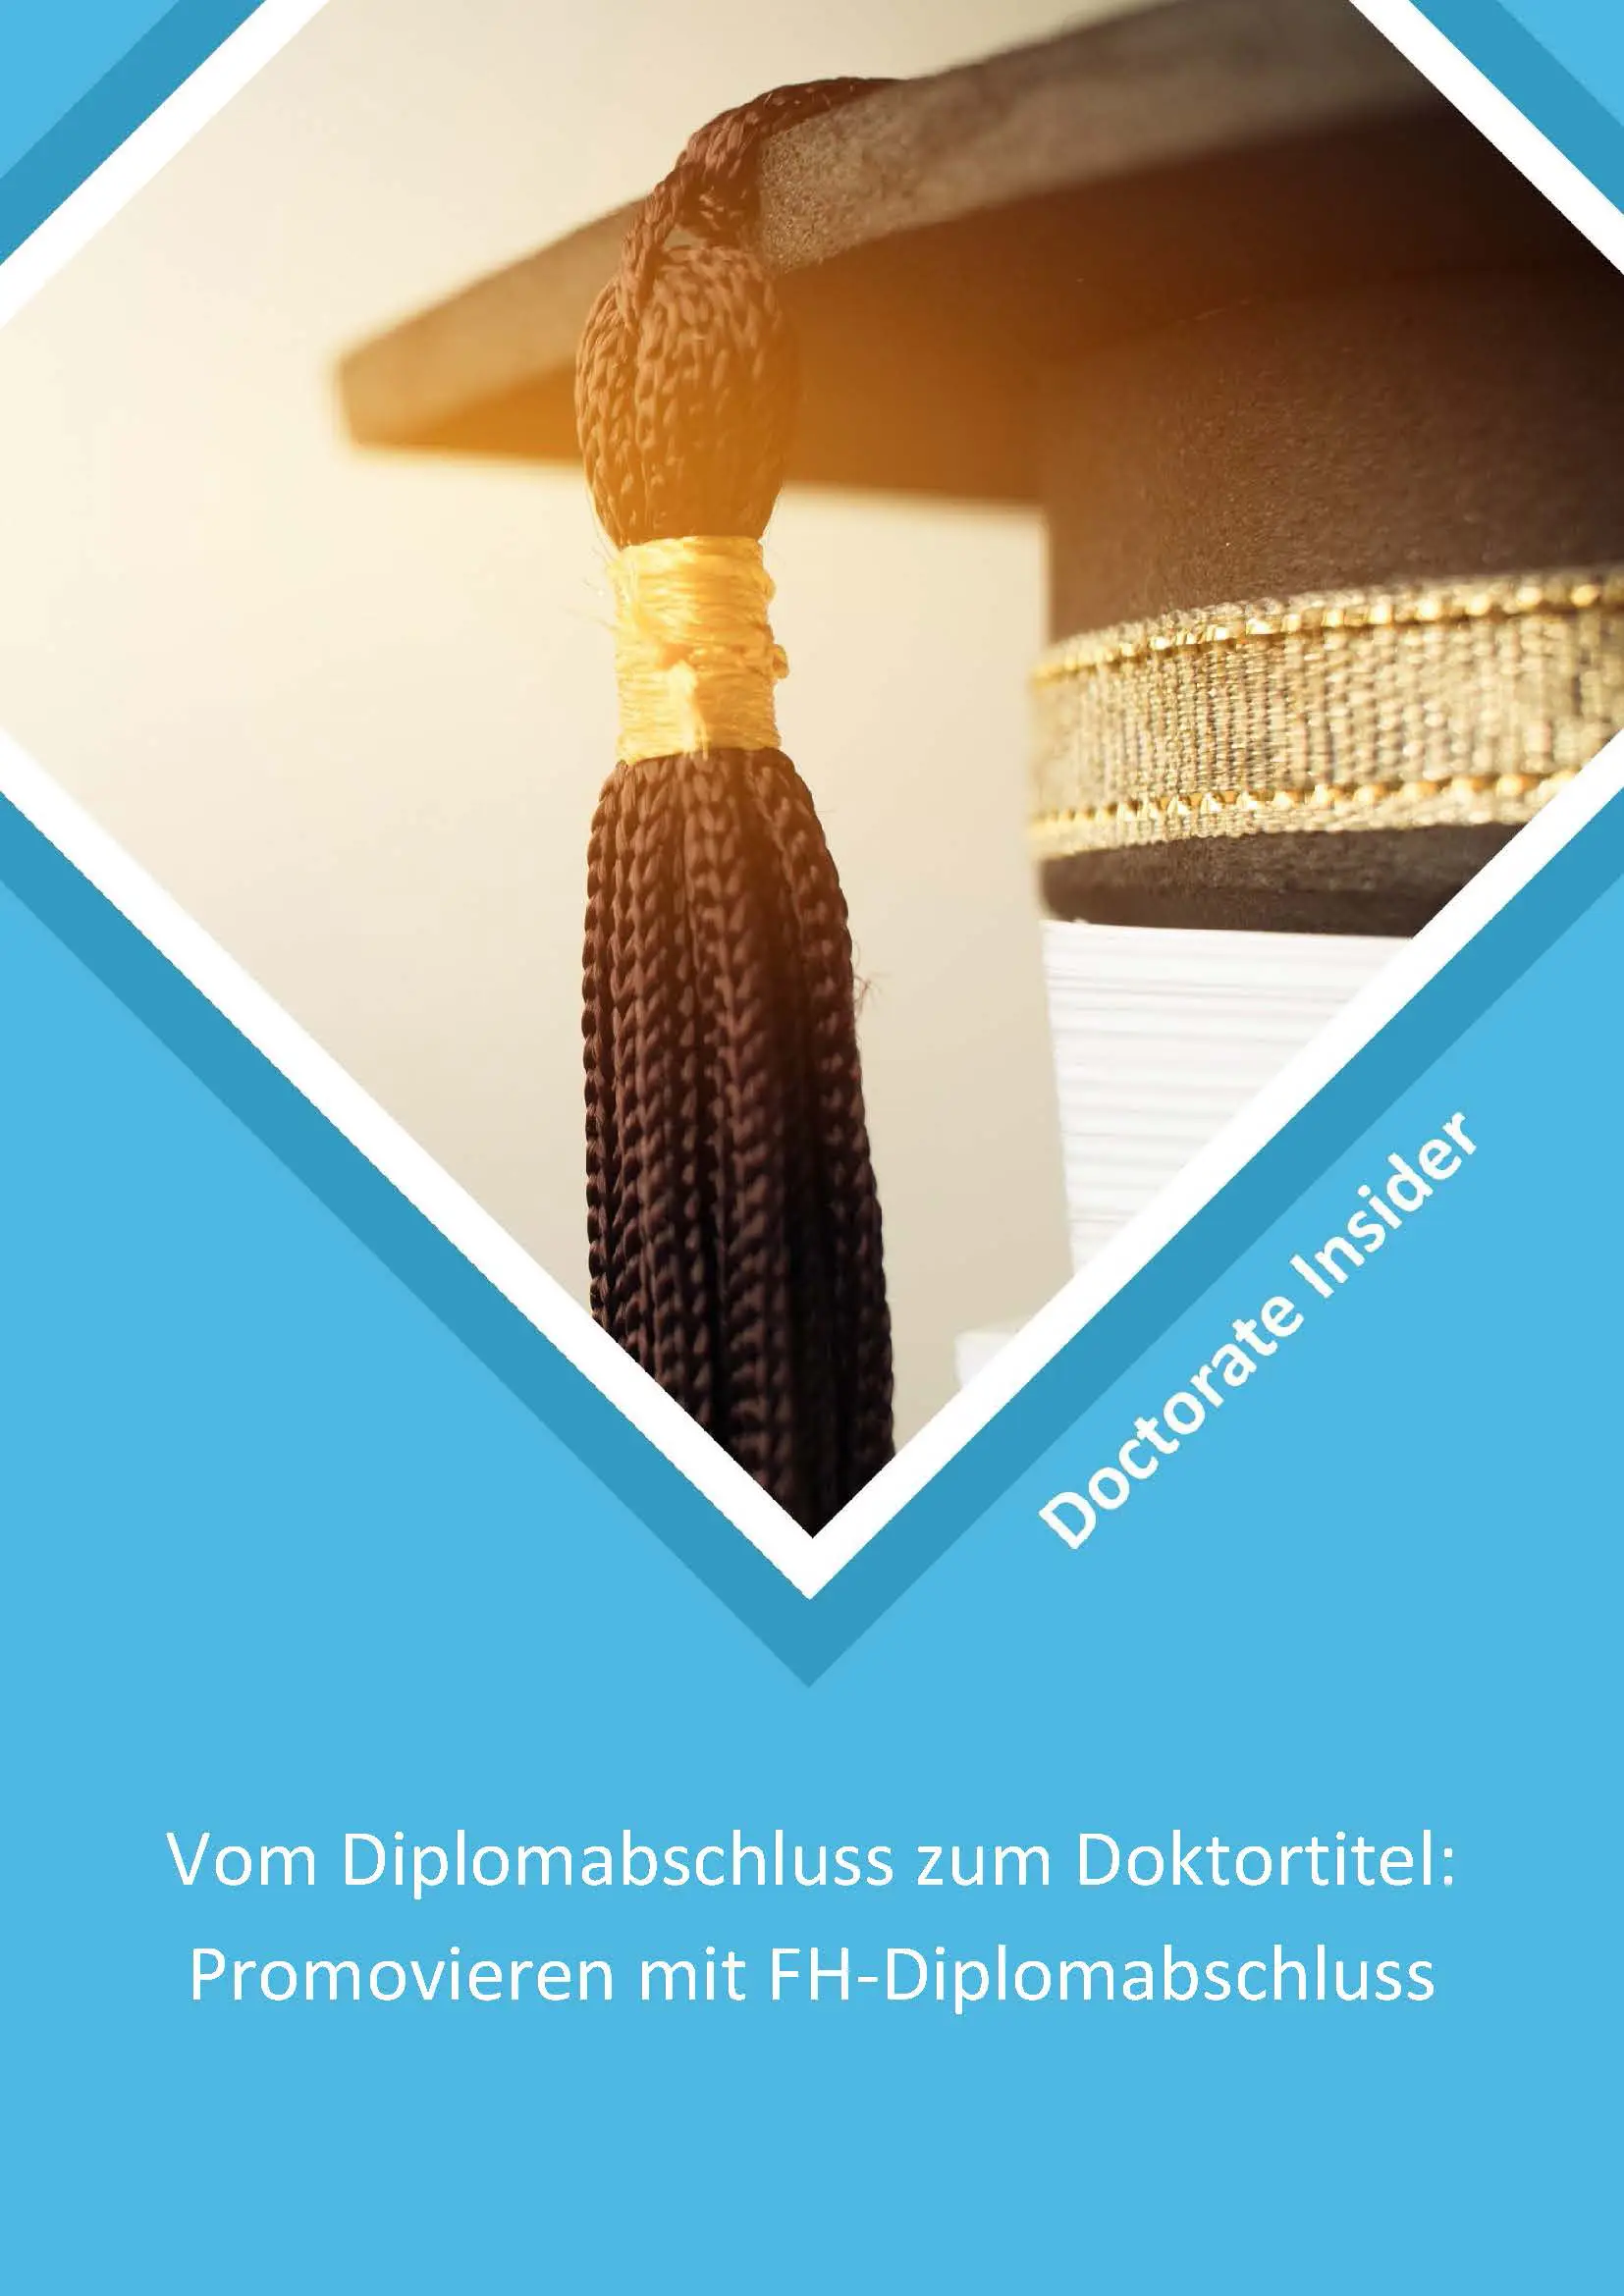 Doctorate-Insider-Guide Vom Diplomabschluss zum Doktortitel